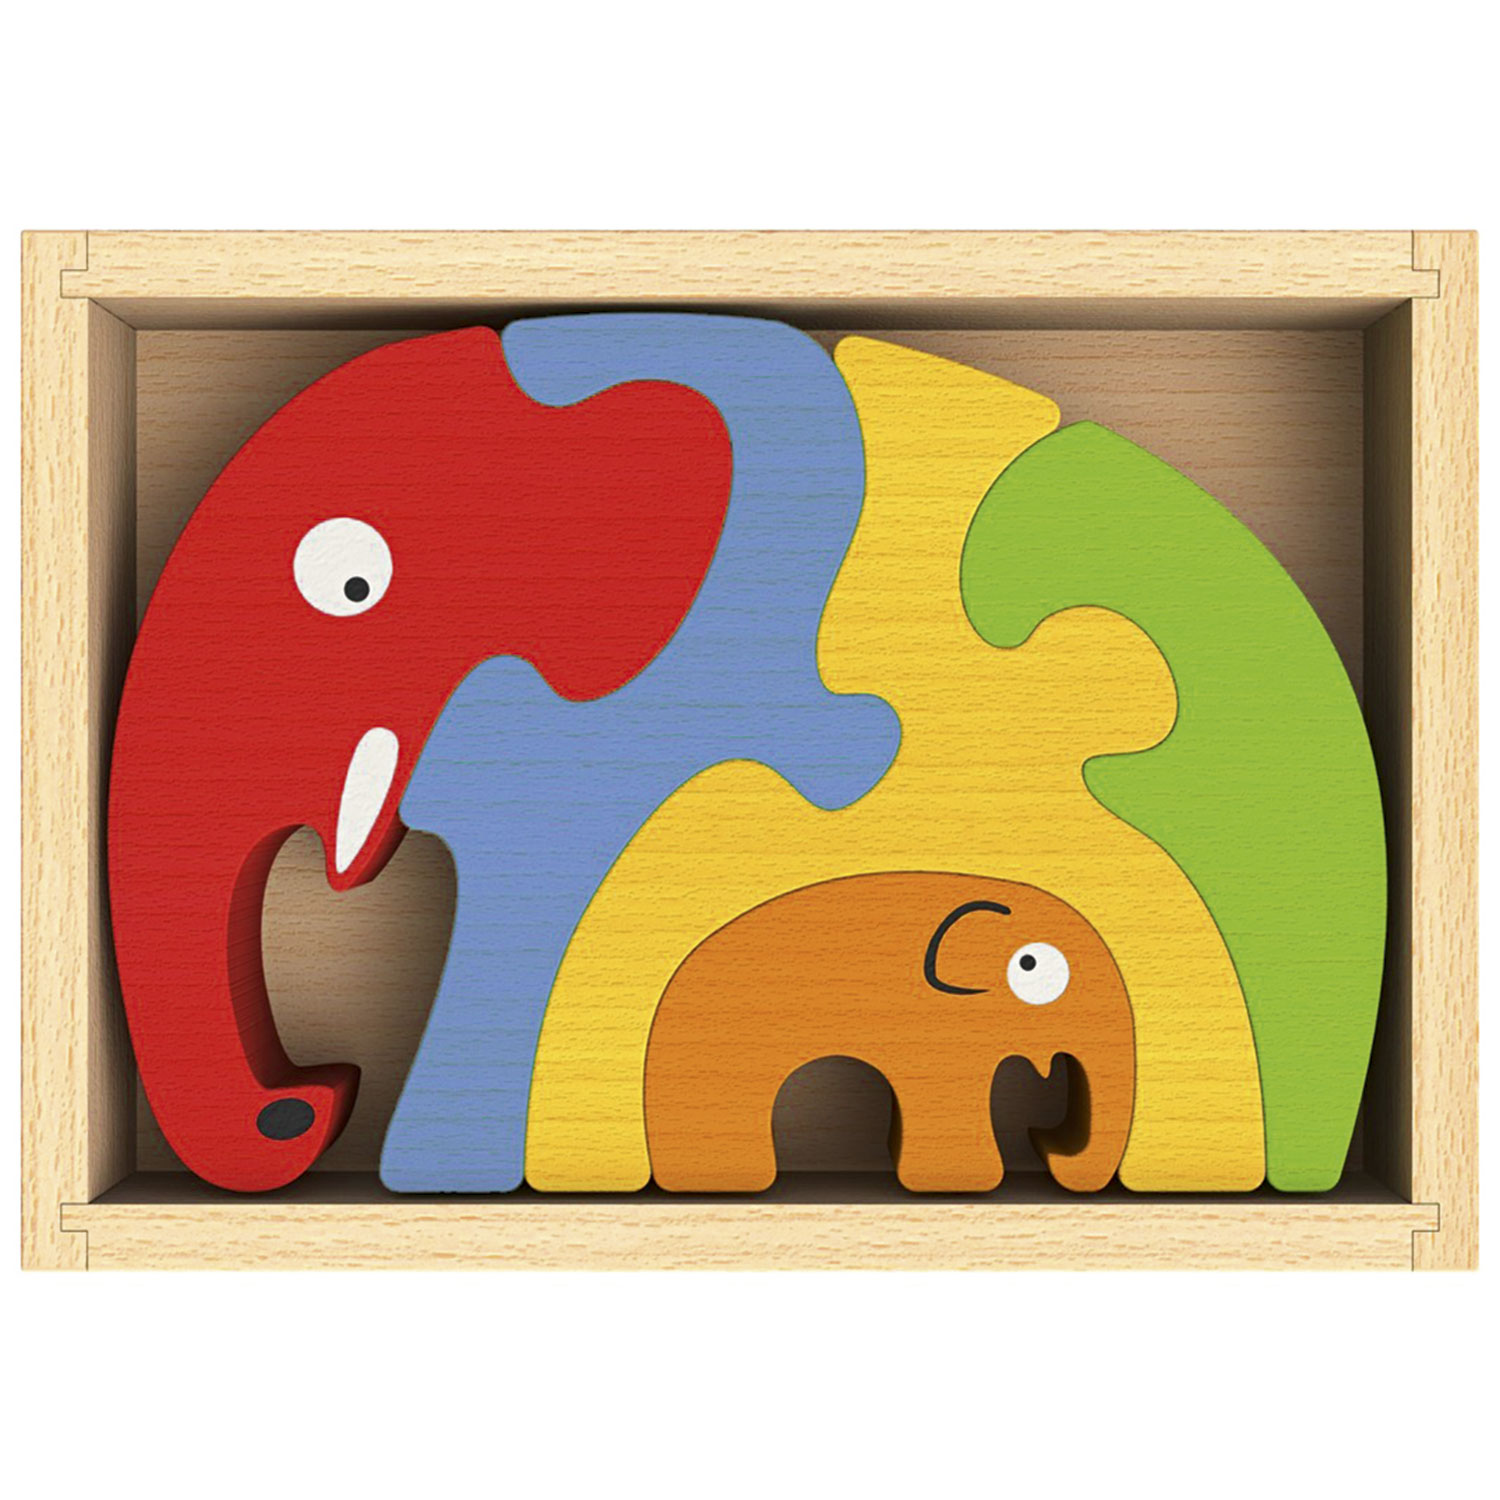 Elefantenfamilie - Elephant Familiy Puzzle